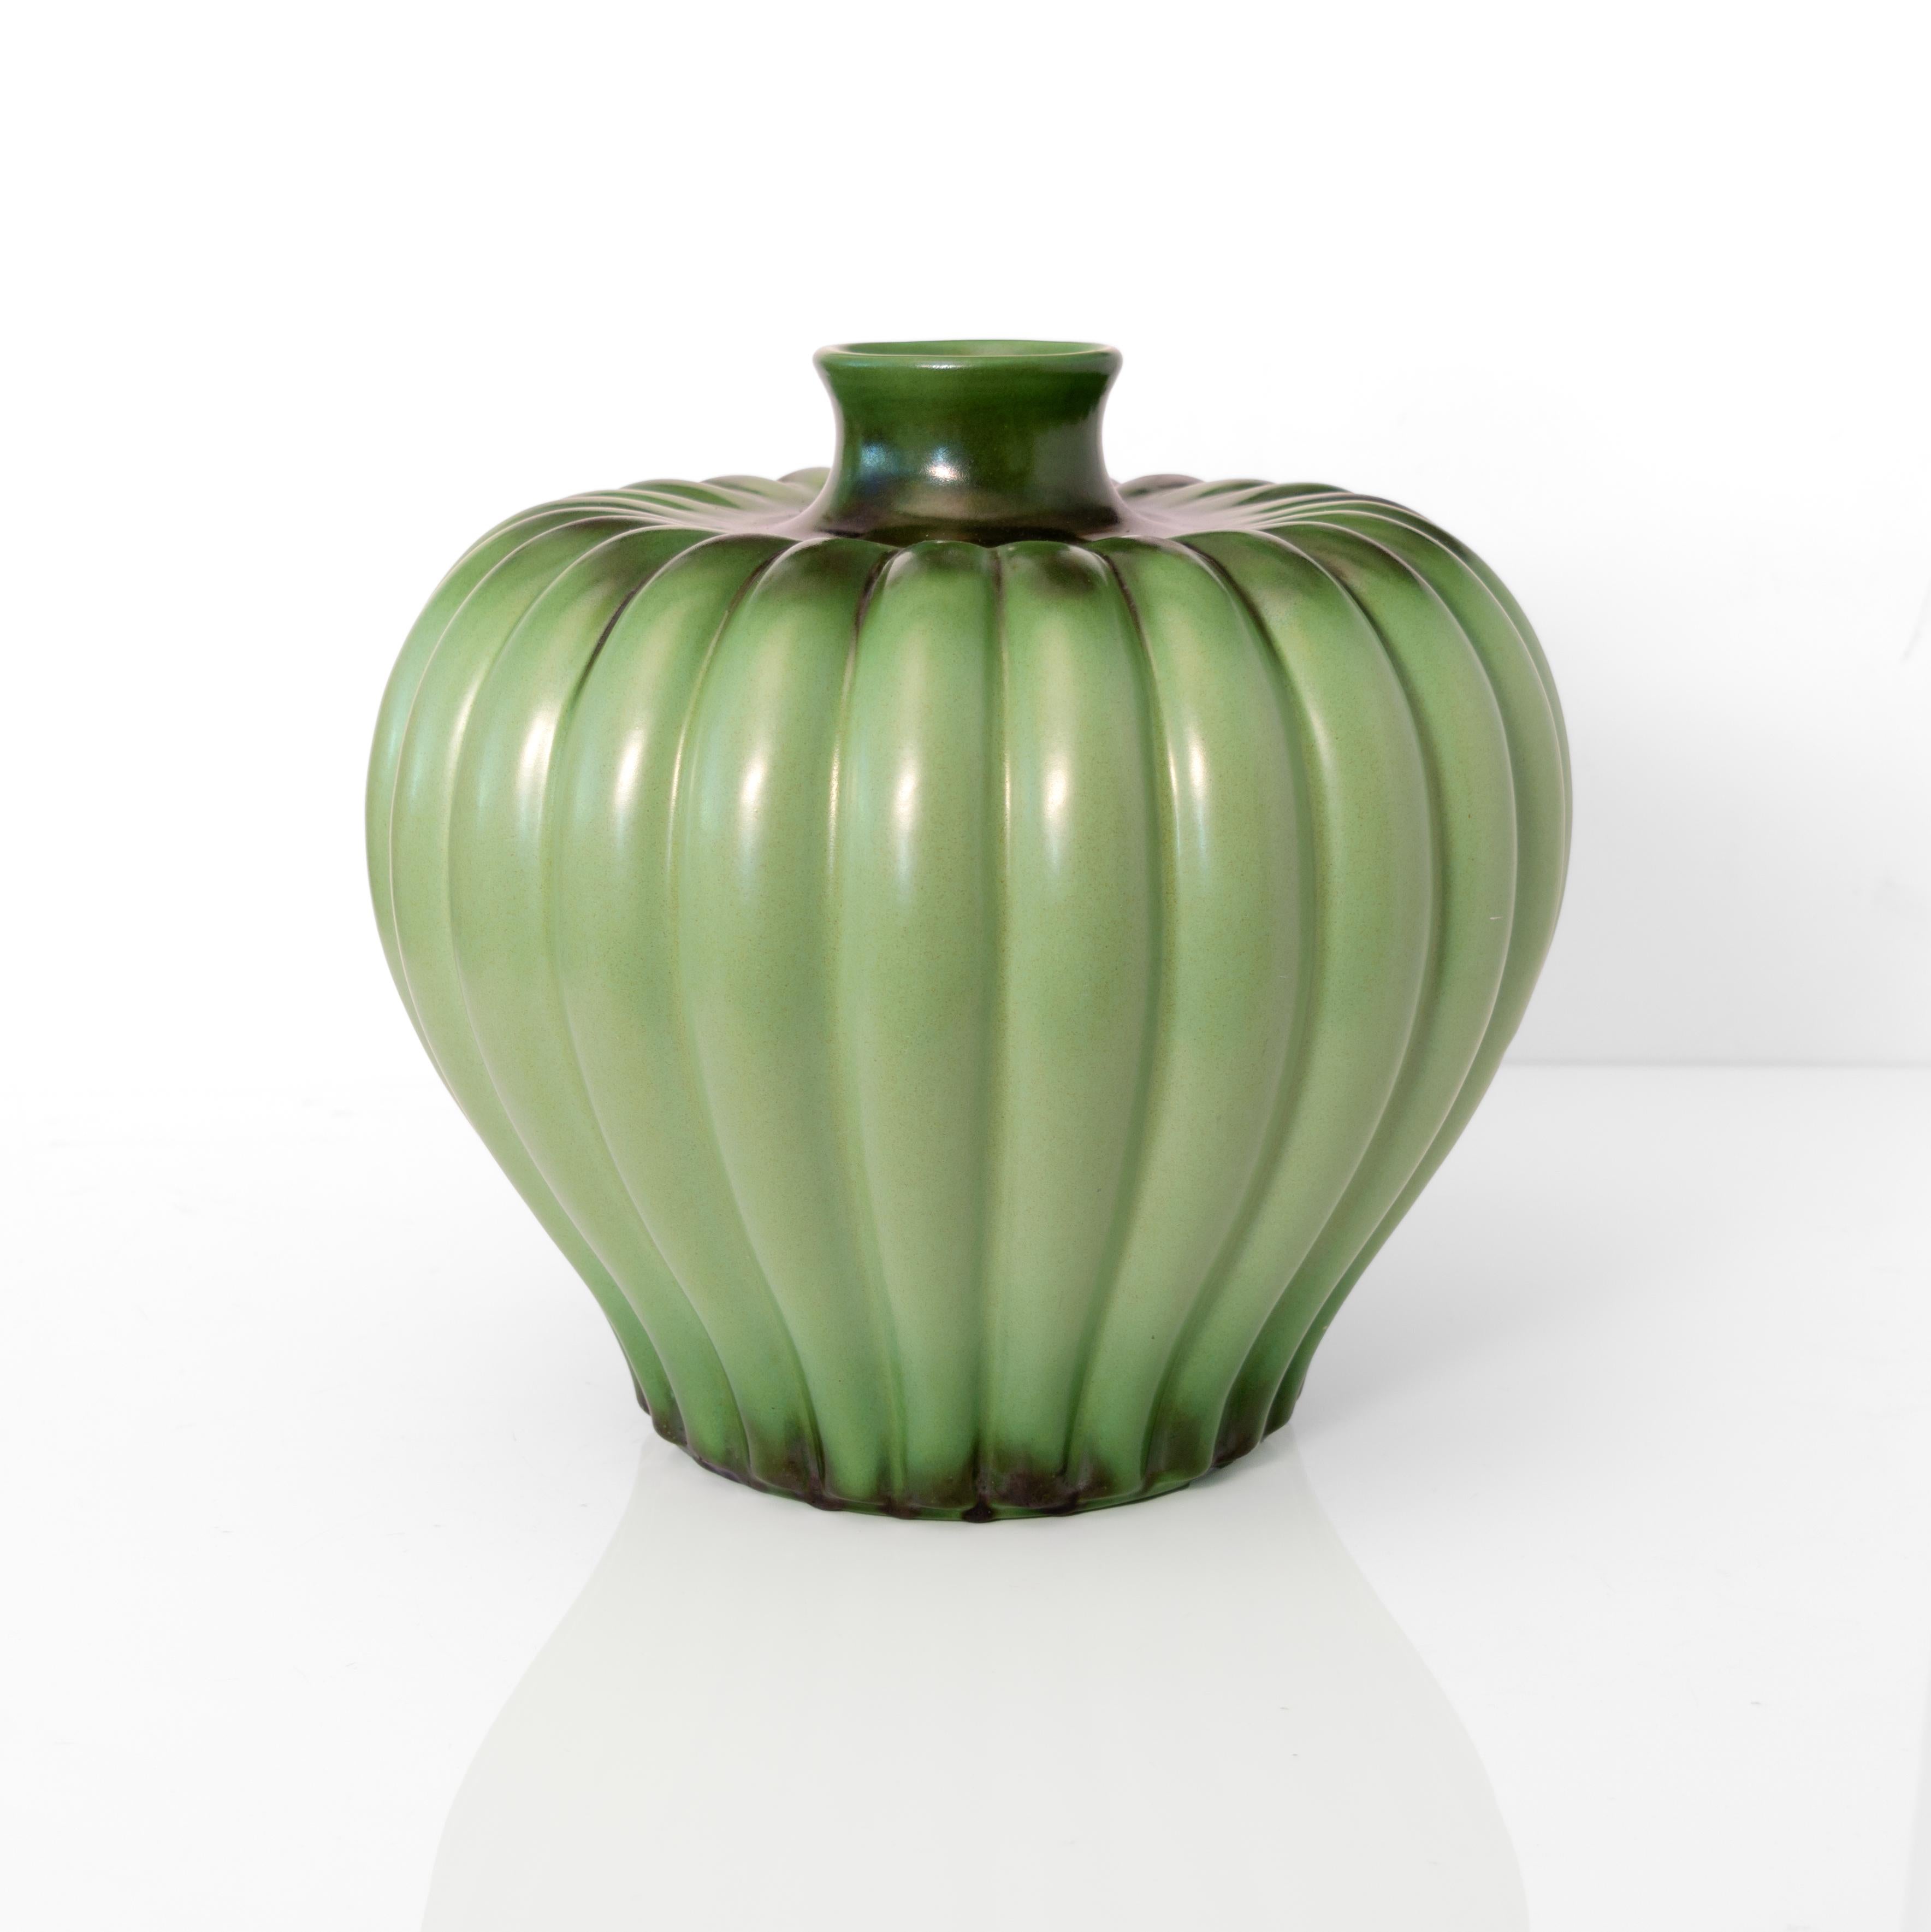 Le grand vase à corps nervuré de l'artiste Ewald Dahlskog, émaillé d'une pomme verte, a été créé pour Bo Fajans, Suède, vers 1940. 

Hauteur : 10.5